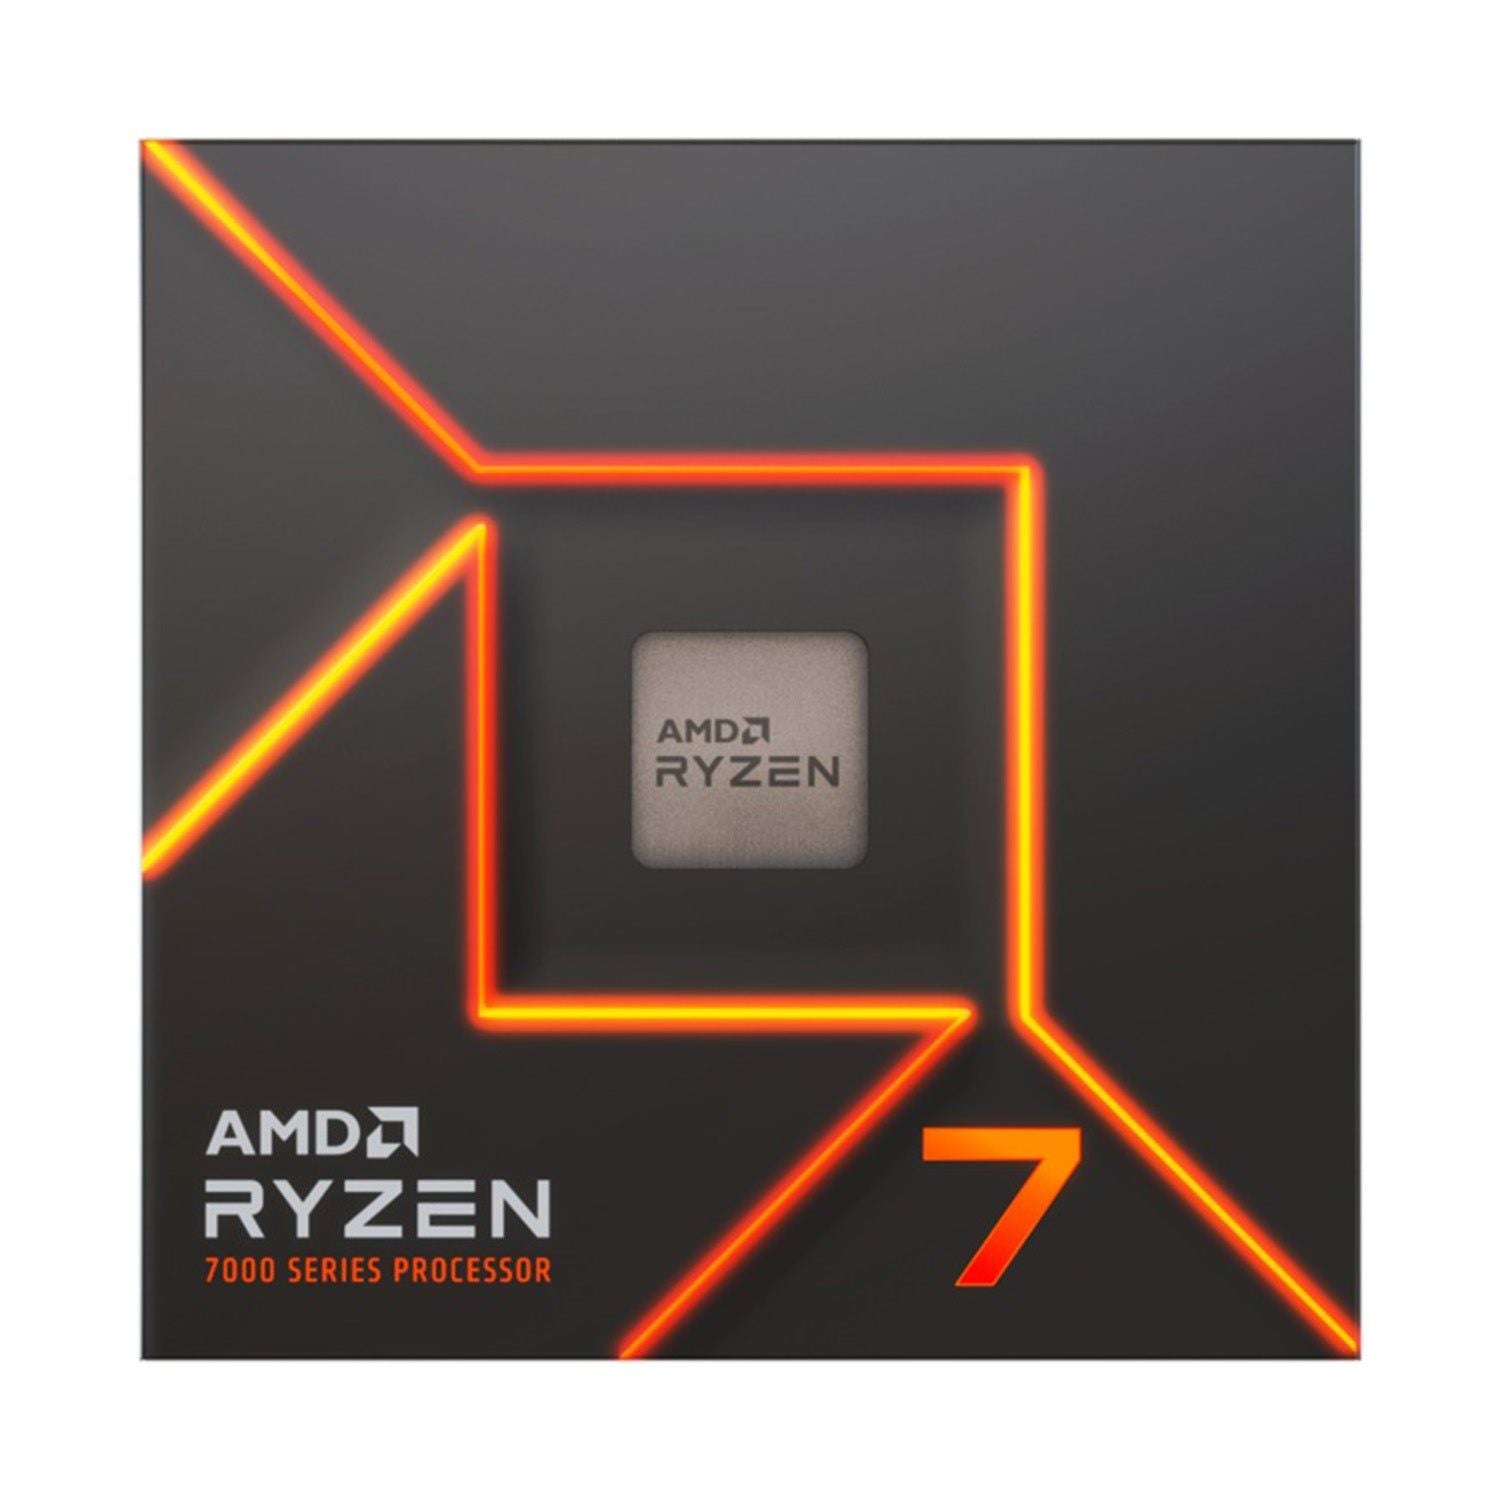 AMD Ryzen 7 7700 - OVERCLOCK Computer